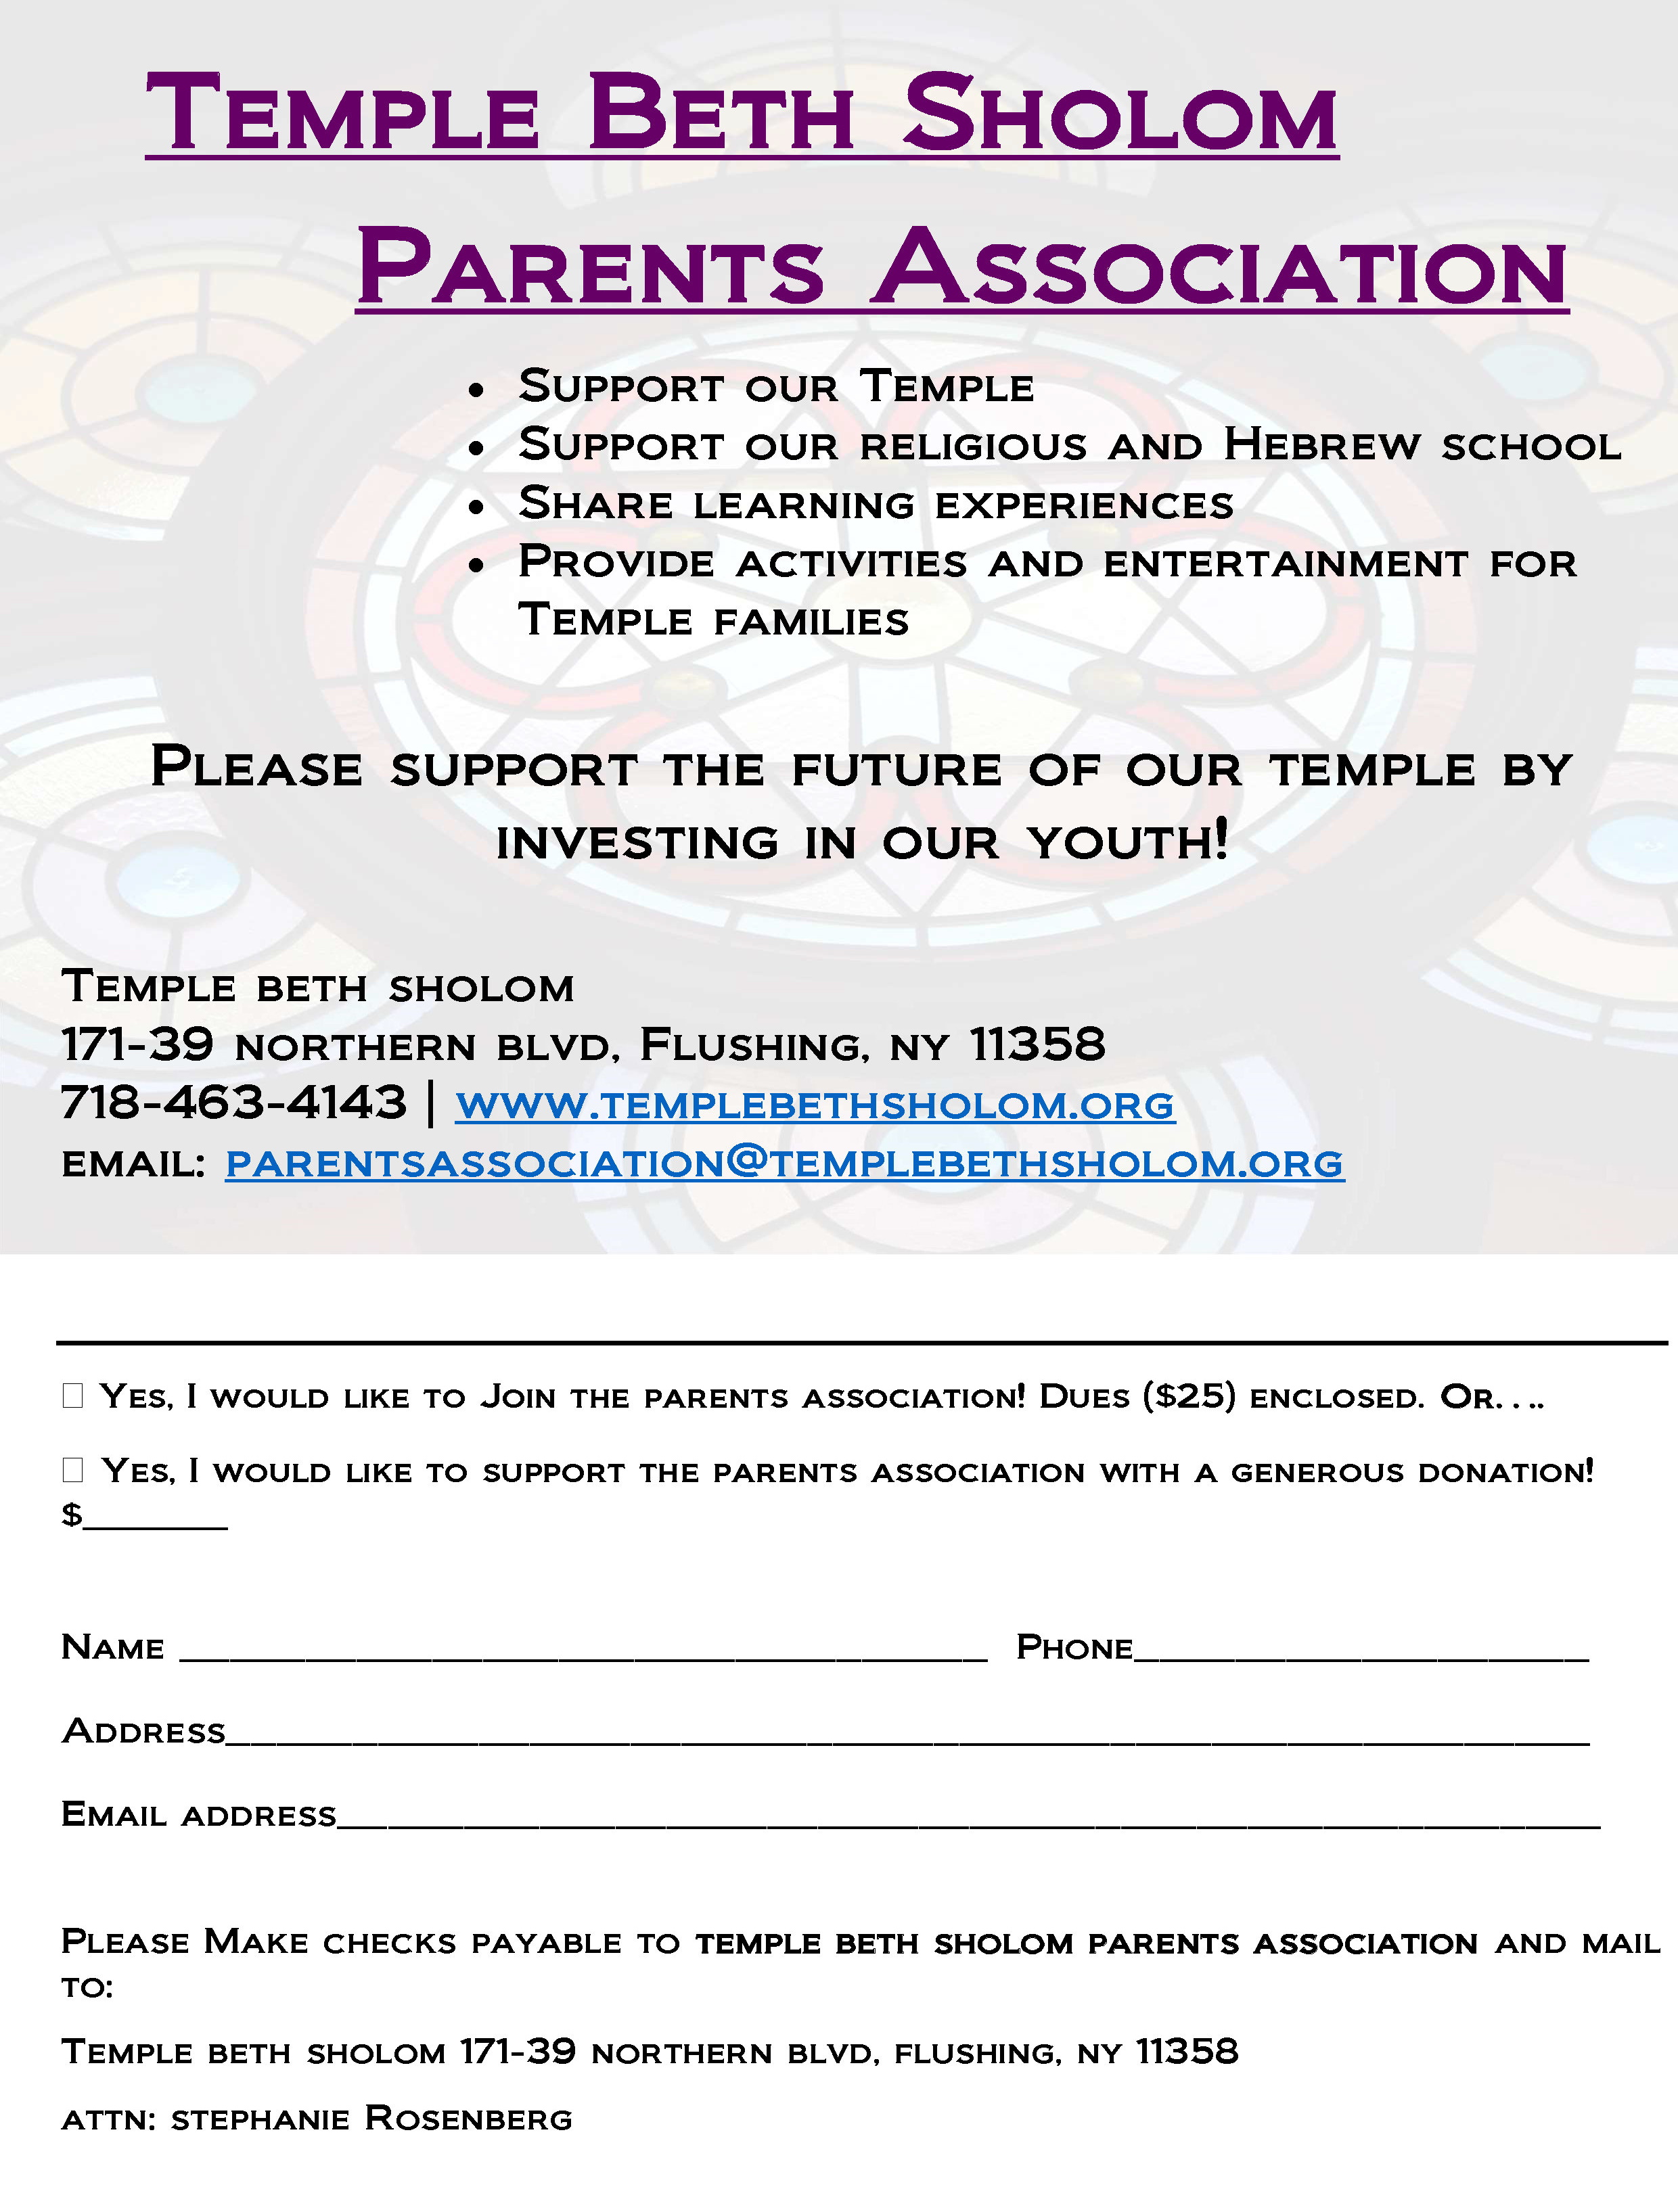 Parents Association Membership